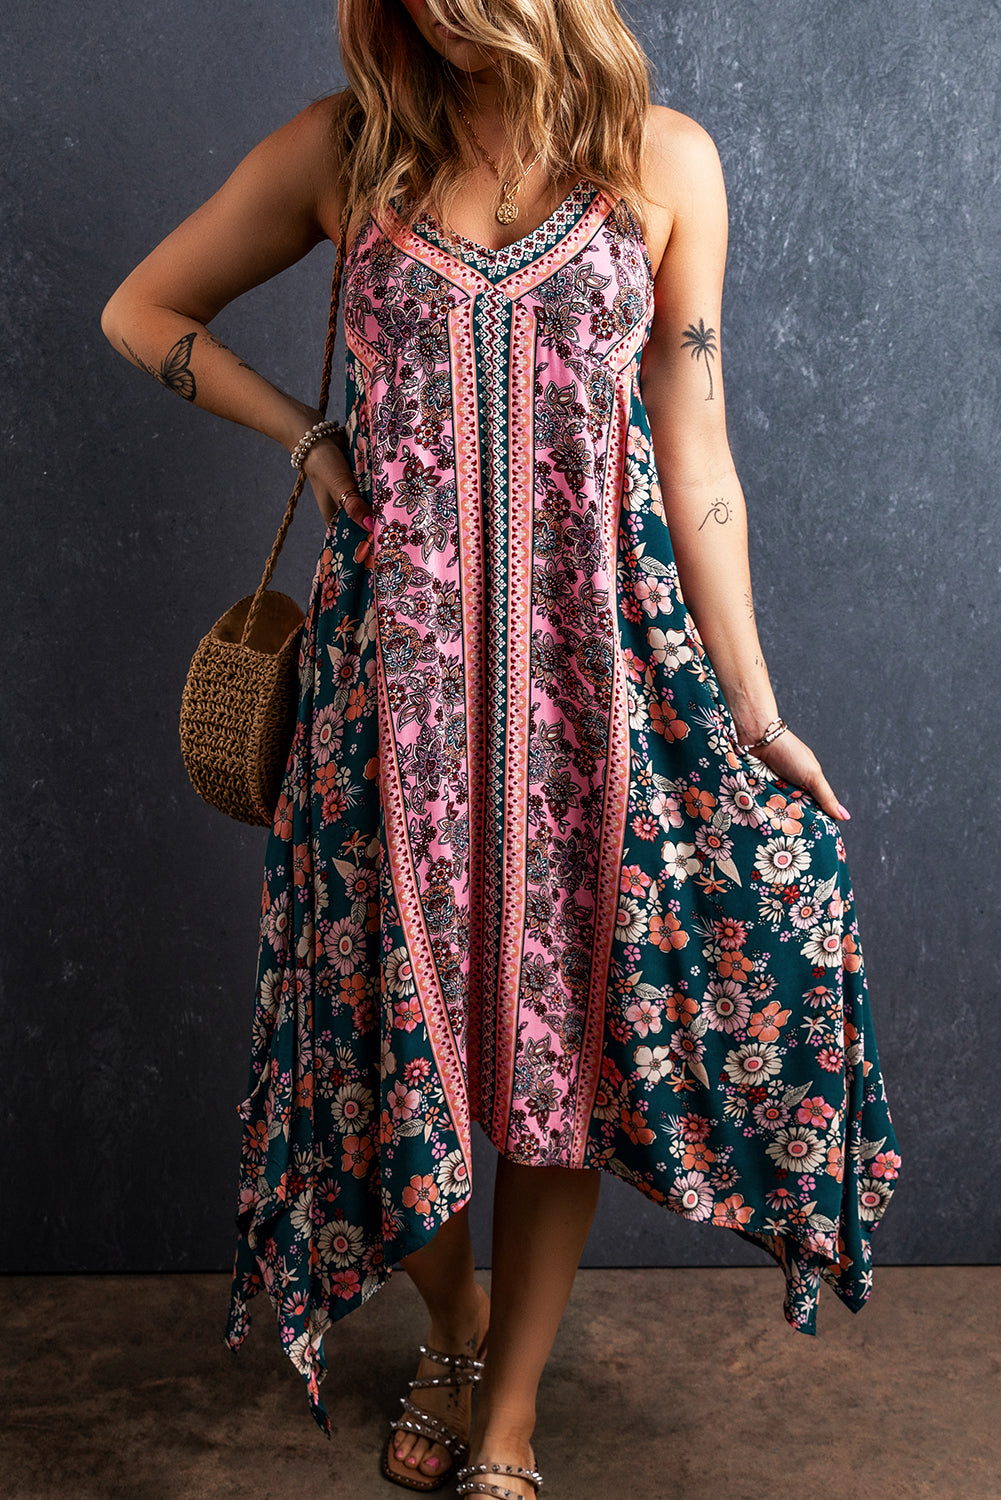 Rožnata dolga obleka s cvetličnim potiskom v boemskem stilu